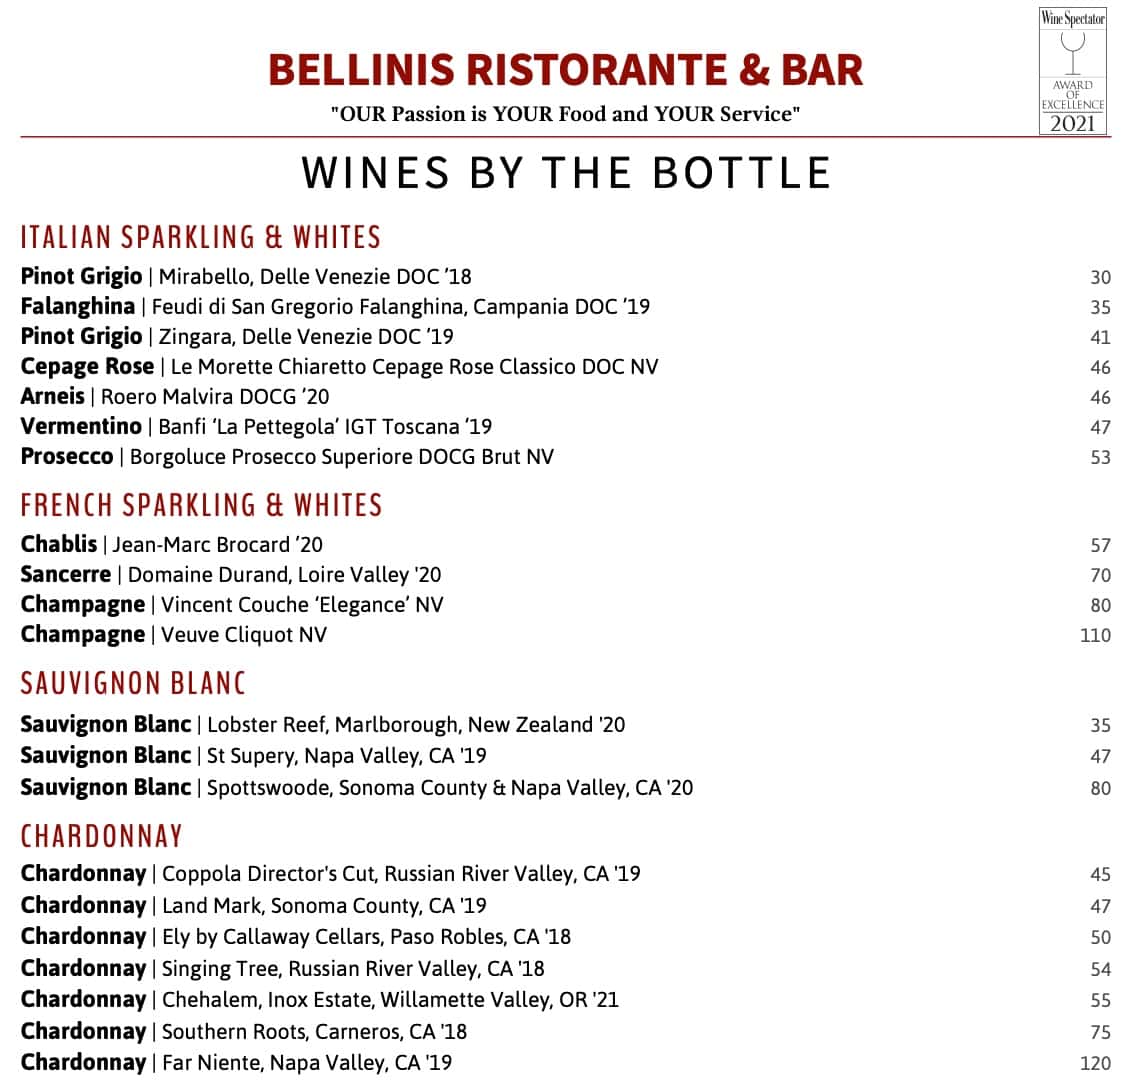 Bellini's Ristorante & Bar Lunch Menu